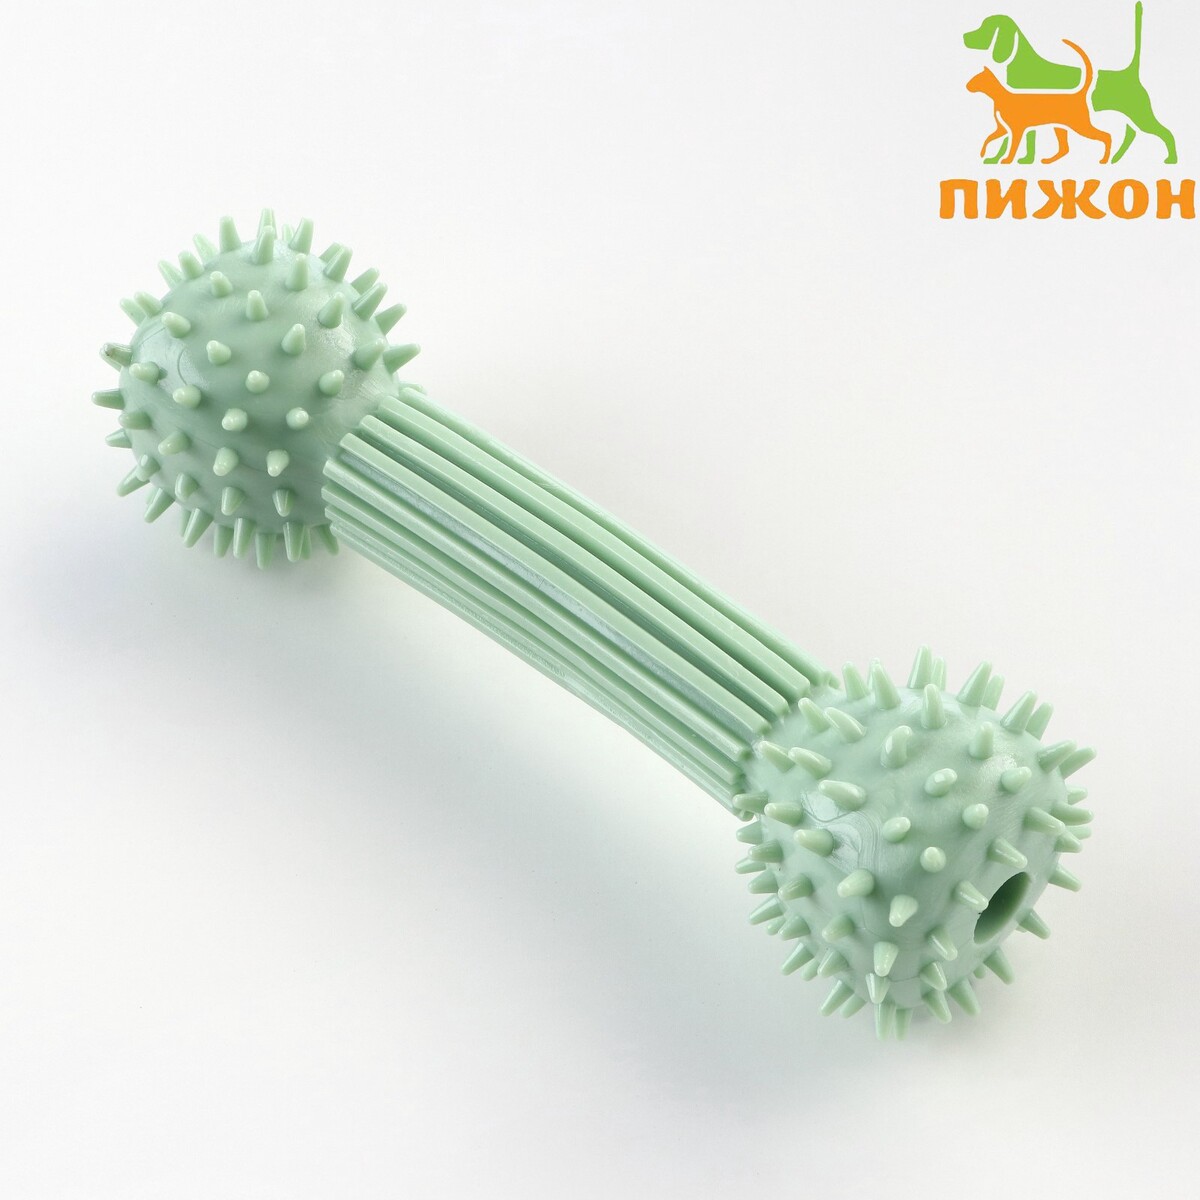 Игрушка для лакомств и сухого корма игрушка интеллектуальная для лакомств 14 х 3 см зеленая